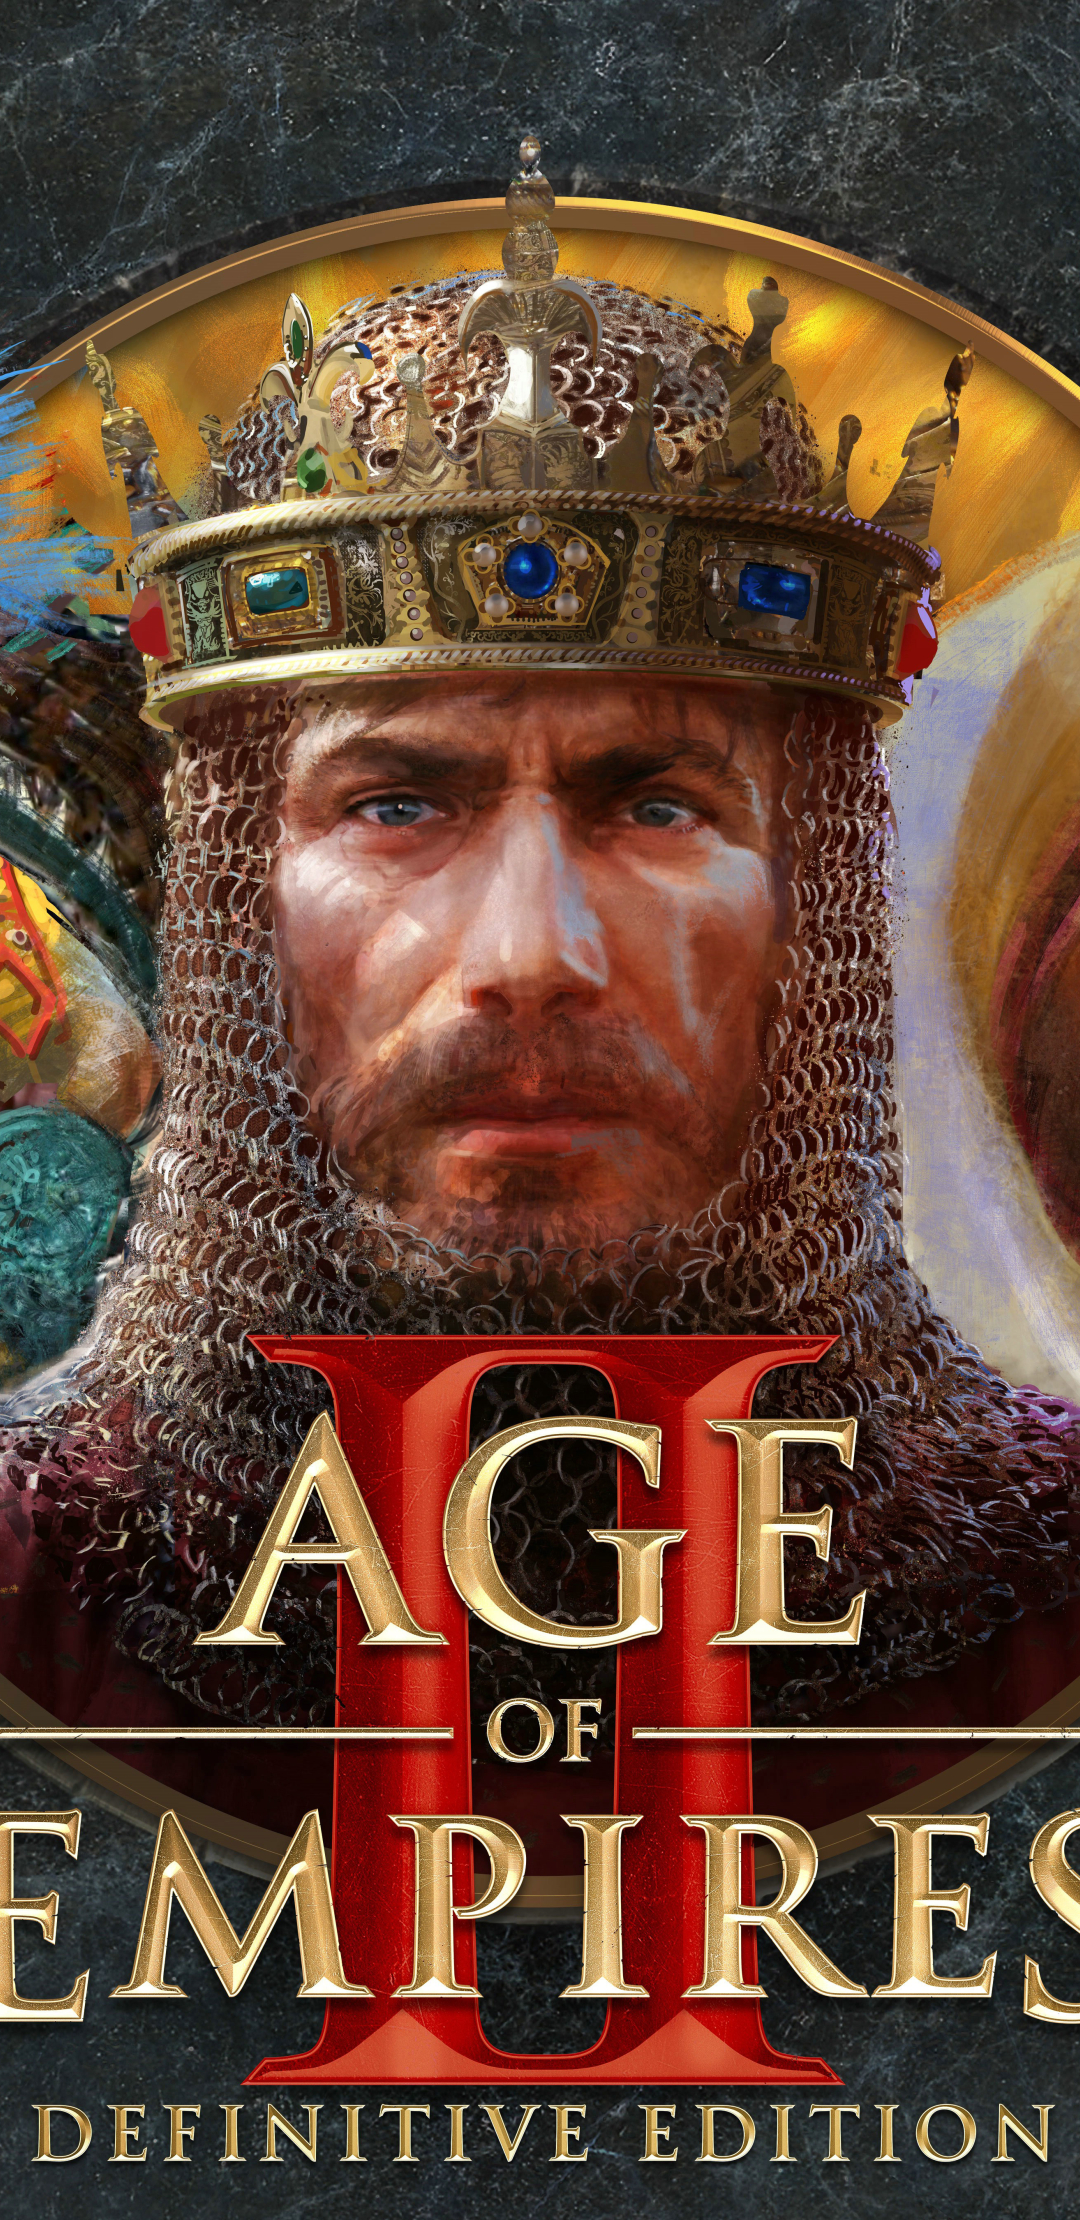 Age of empires definitive edition steam не запускается фото 81